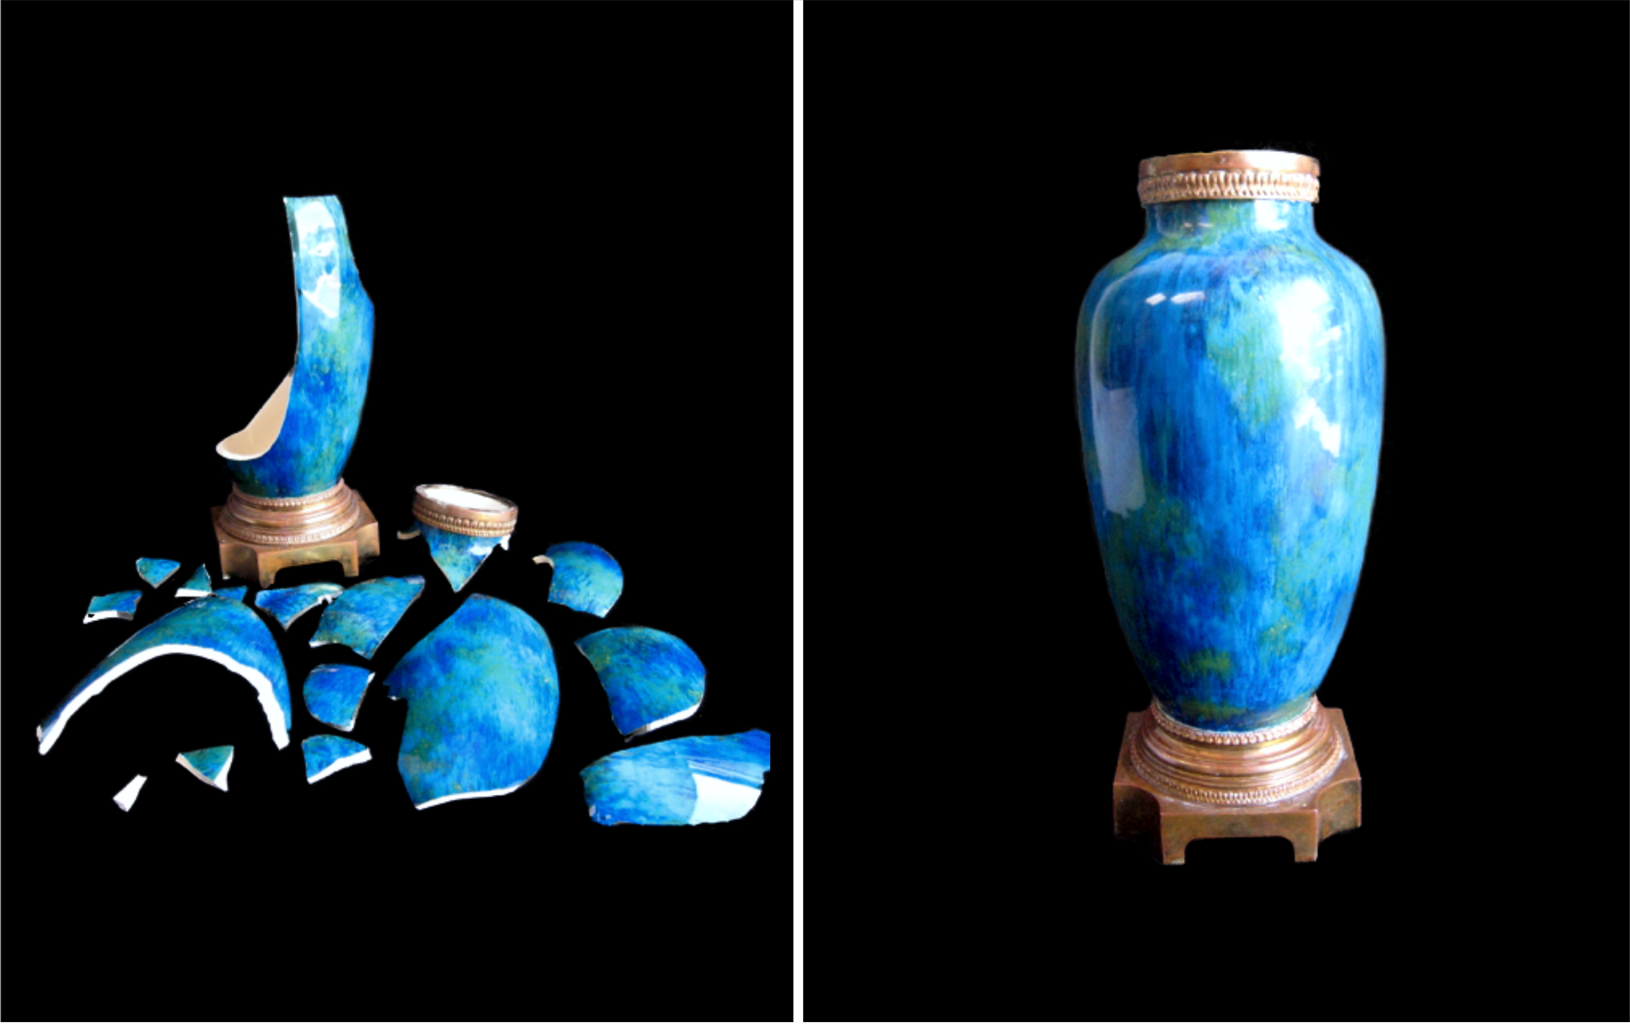 Blue Porcelain Vase before and after